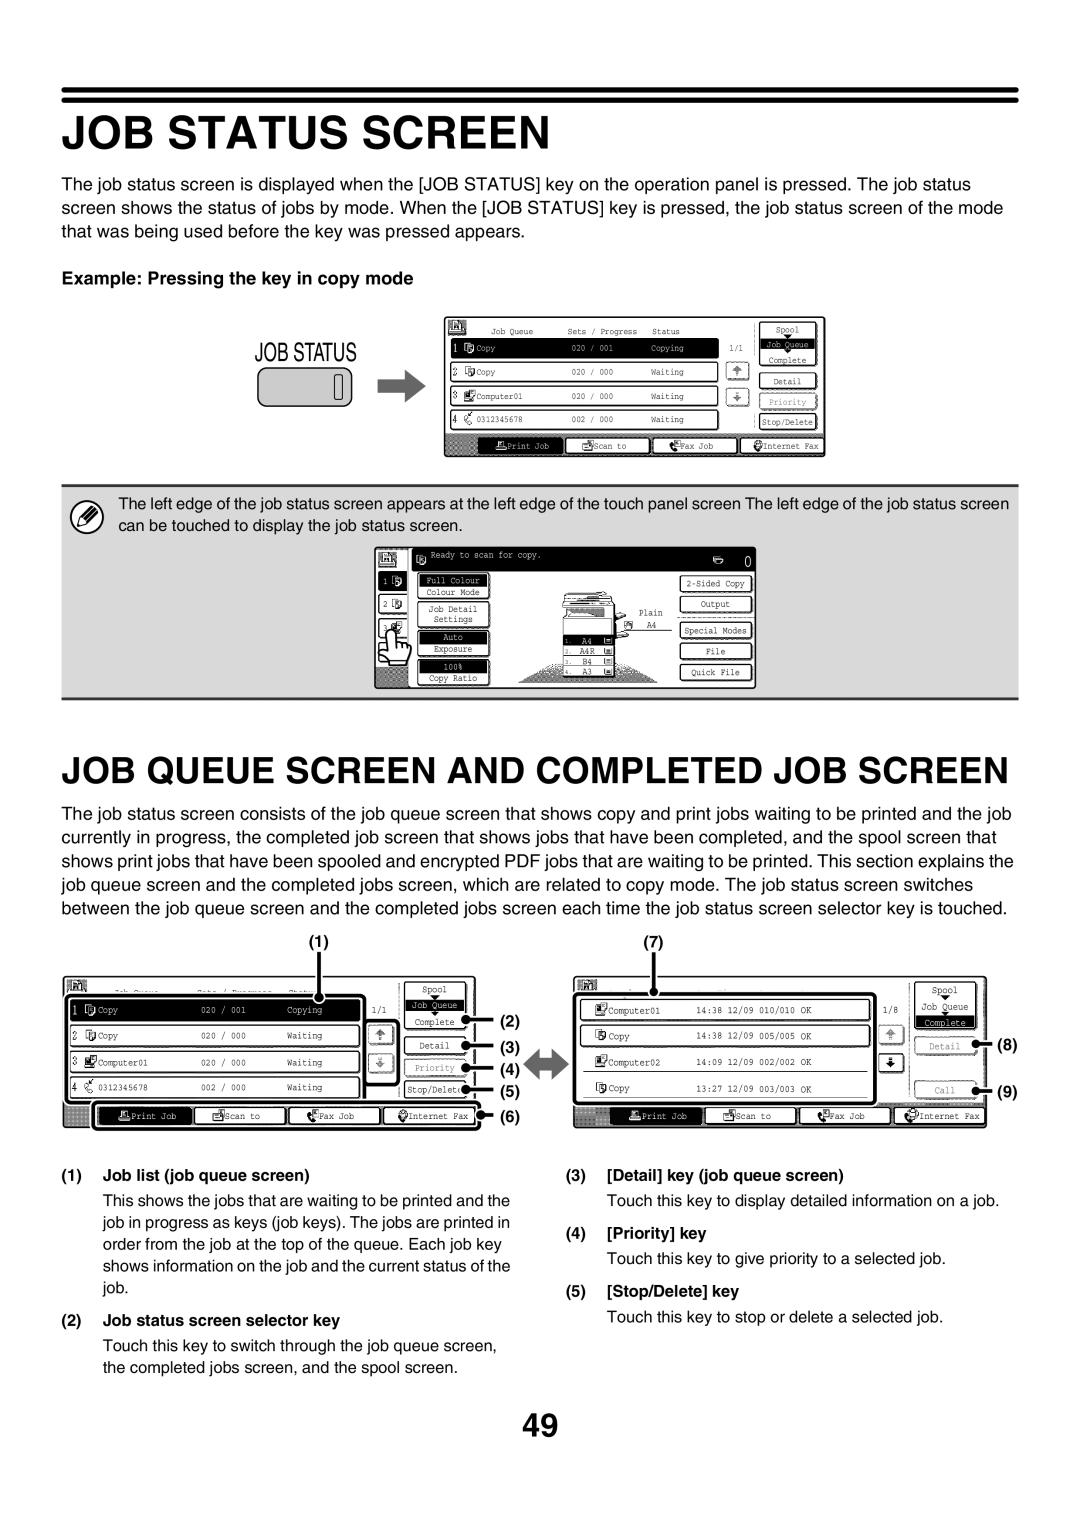 Sharp MX-2300G, MX-4501N, MX-2700N, MX-3501N, MX-2300N, MX-2700G Job Status Screen, Job Queue Screen And Completed Job Screen 